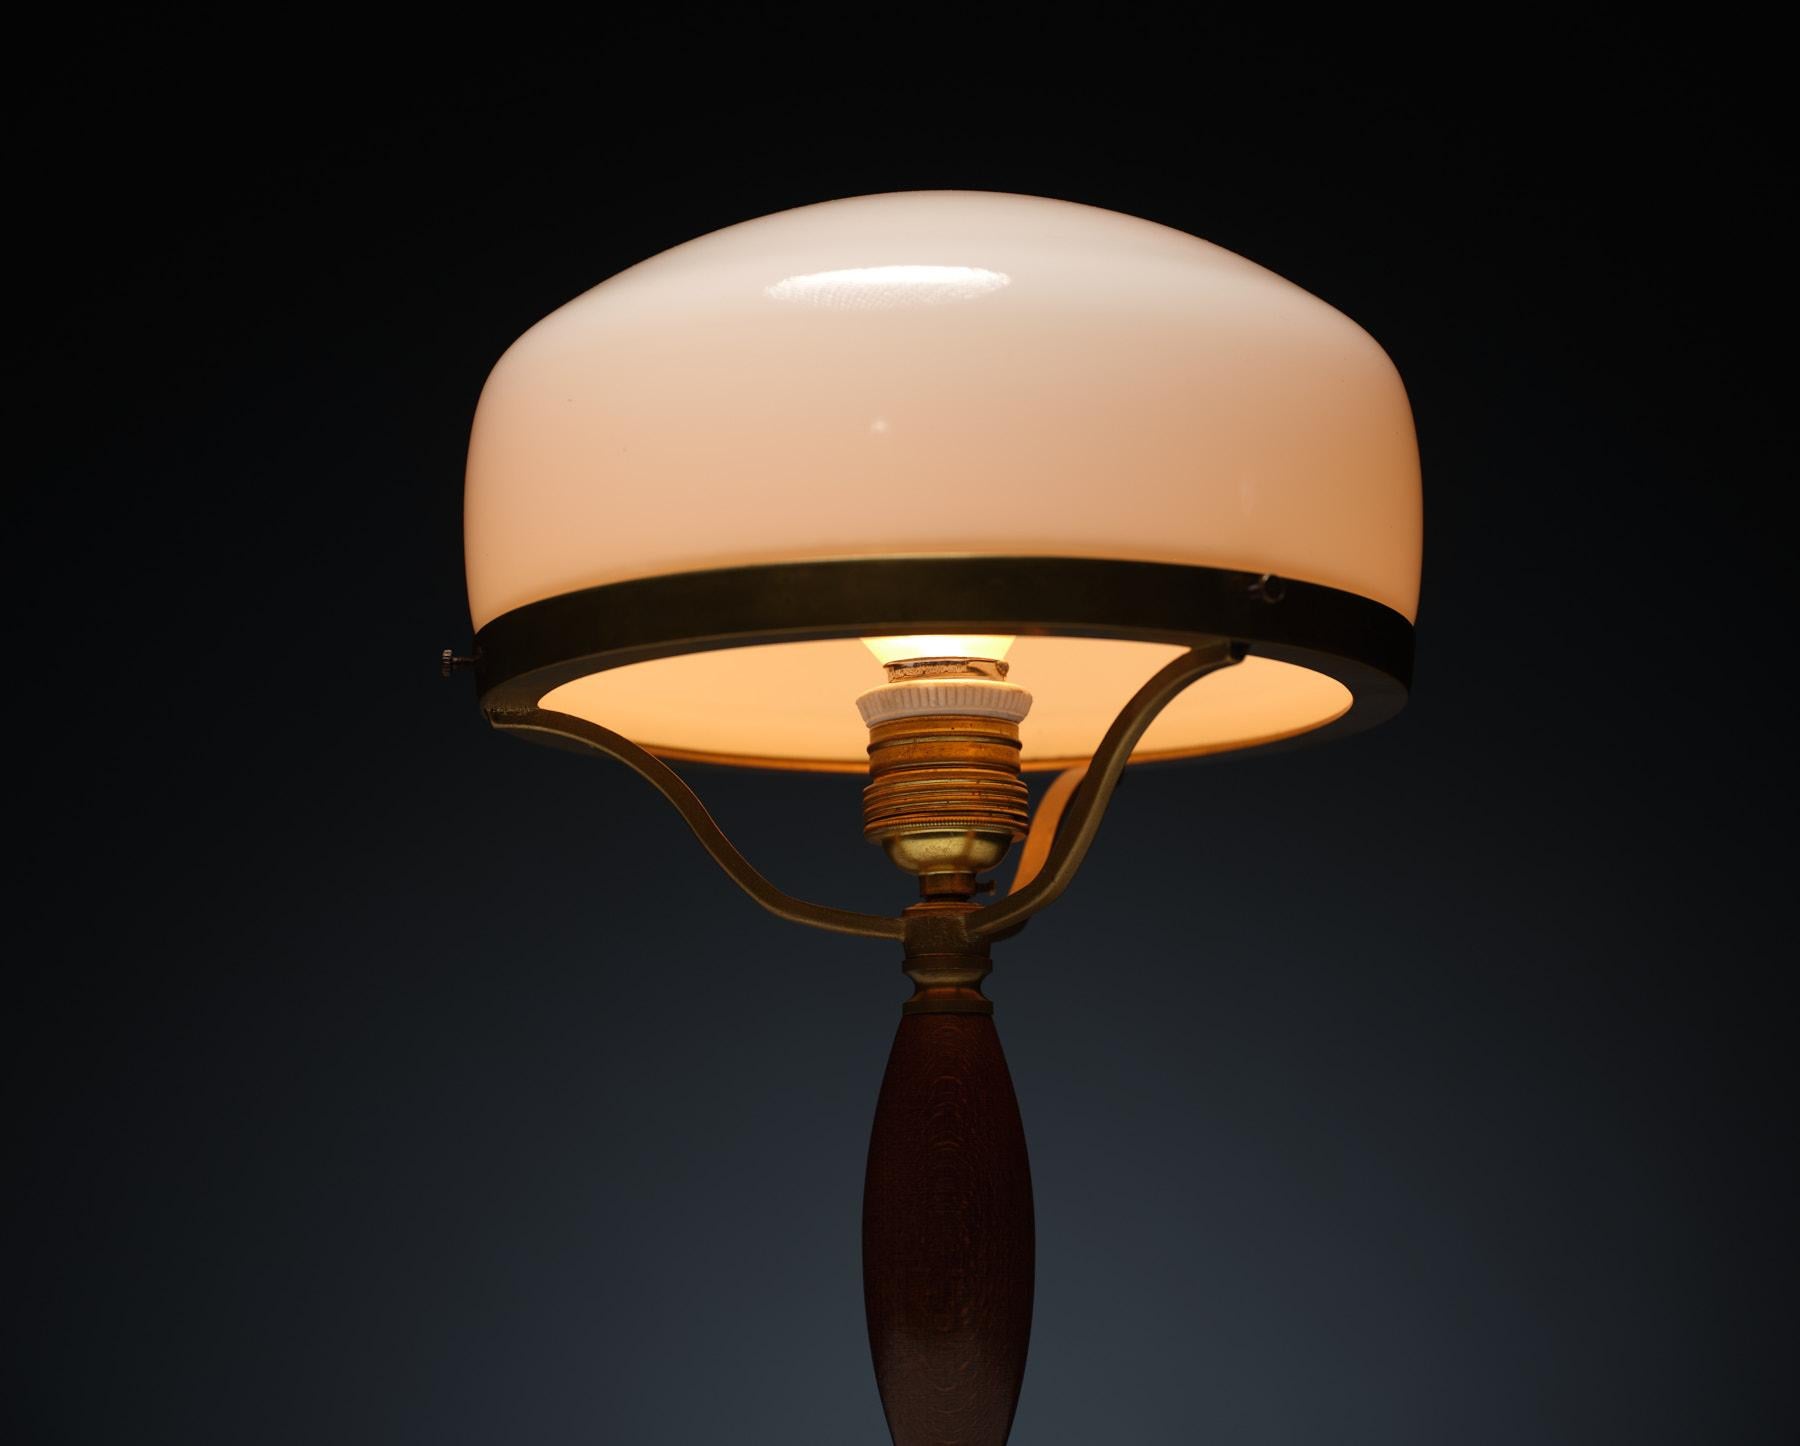 Voici notre exquise lampe de table vintage qui incarne sans effort le charme du milieu du siècle et l'élégance intemporelle. Fabriquée en laiton lustré avec sa patine d'origine, cette lampe dégage une impression d'histoire précieuse. Le riche socle